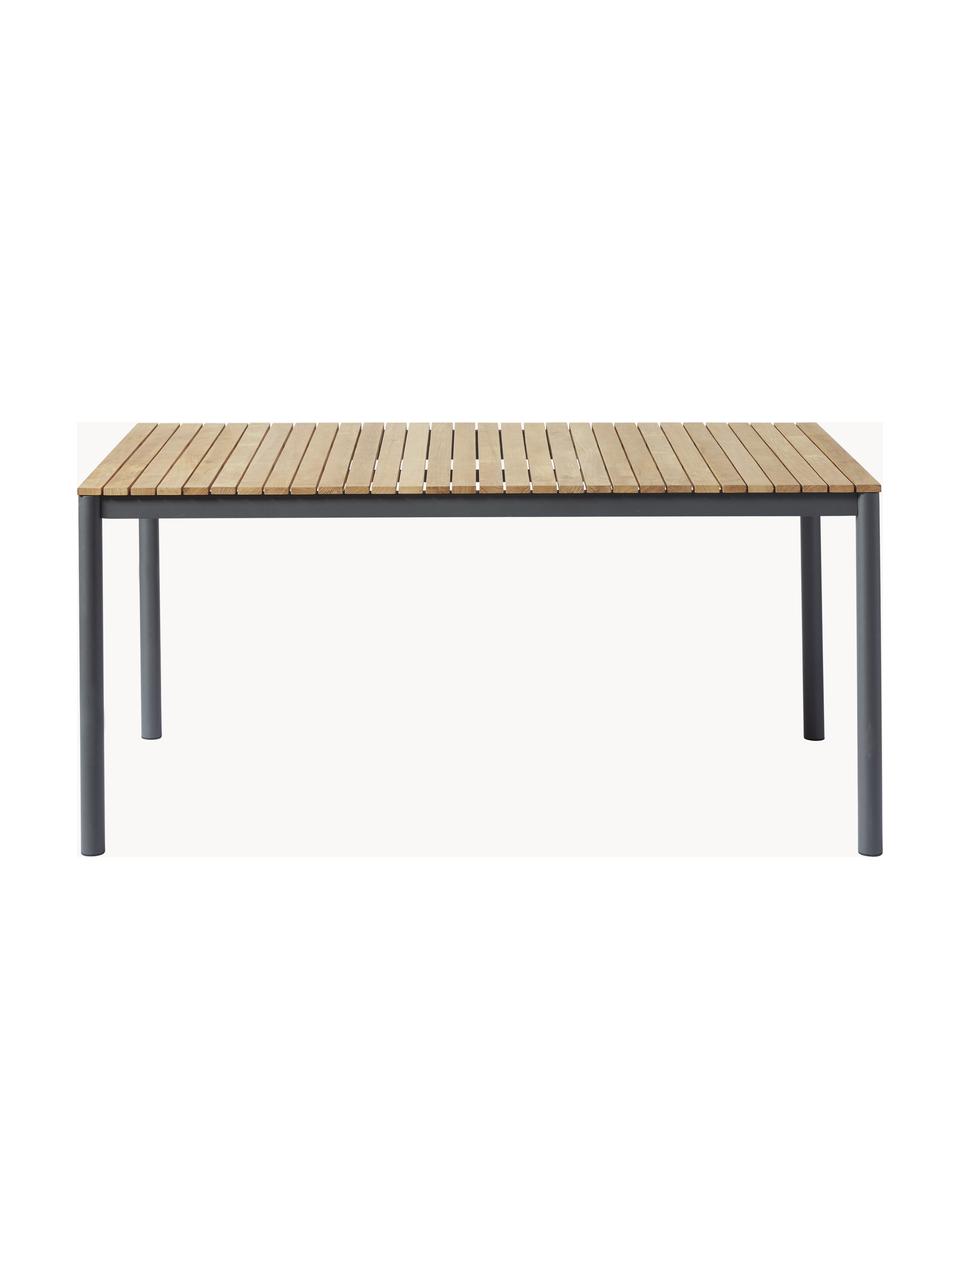 Stół ogrodowy z blatem z drewna tekowego Mood, różne rozmiary, Stelaż: aluminium malowane proszk, Blat: drewno tekowe, Drewno tekowe, antracytowy, S 208 x G 100 cm